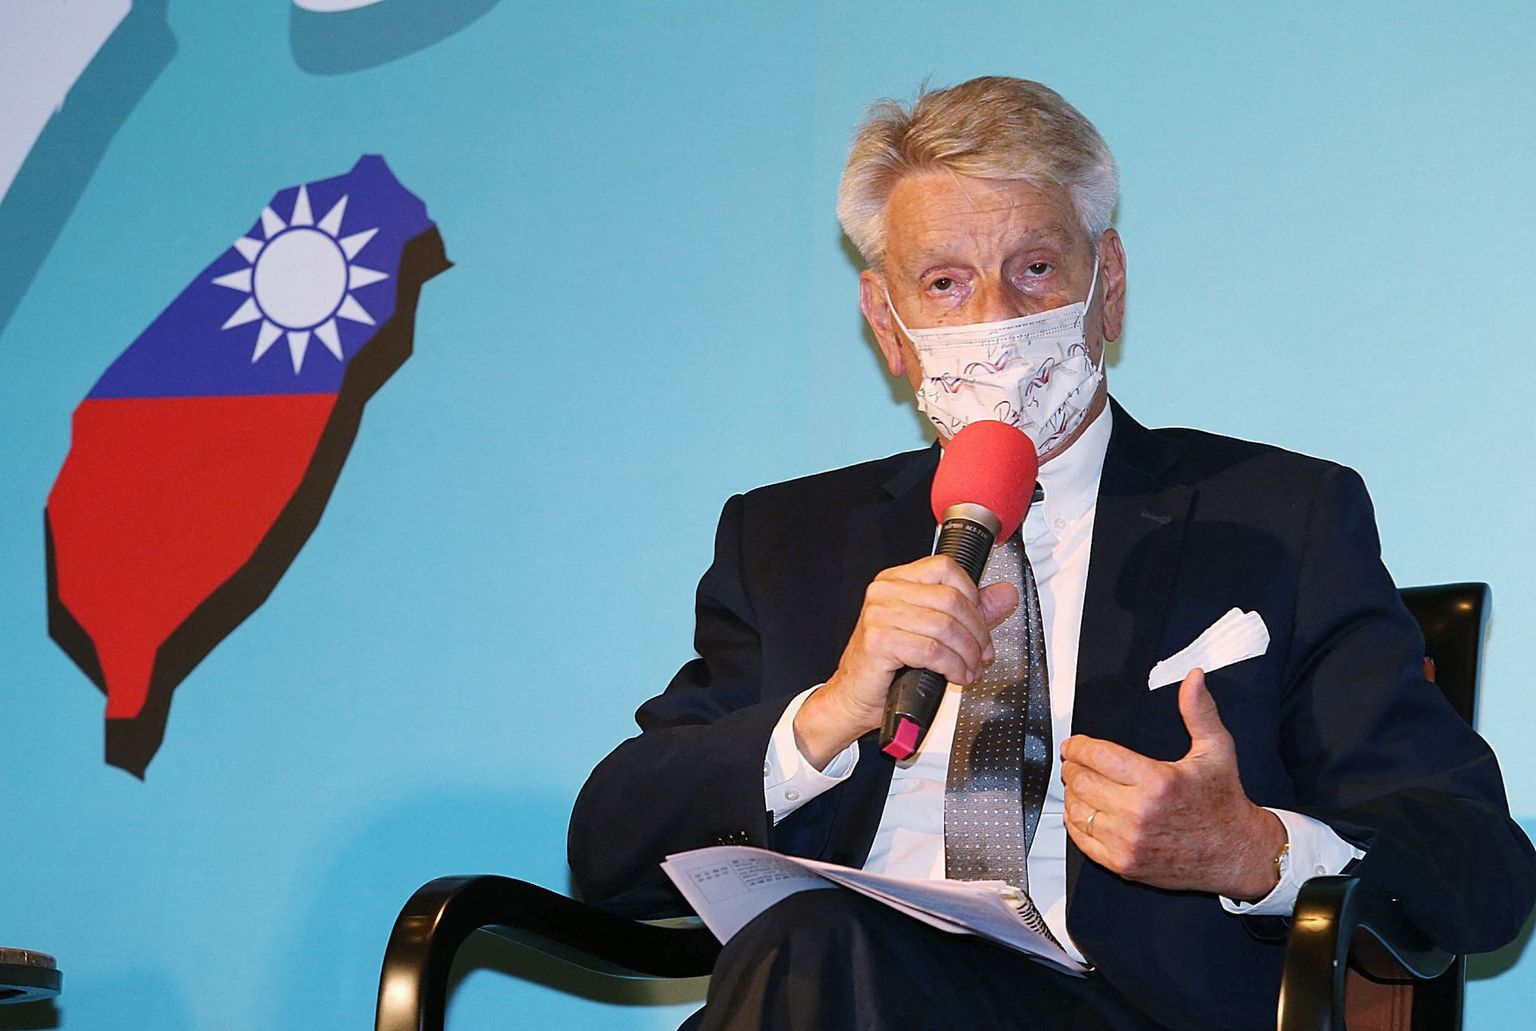 Prantsuse senati liige Alain Richard rääkimas pressikonverentsil Taipeis Taiwanil 8. okt. 2021. (Foto CNA / AFP)